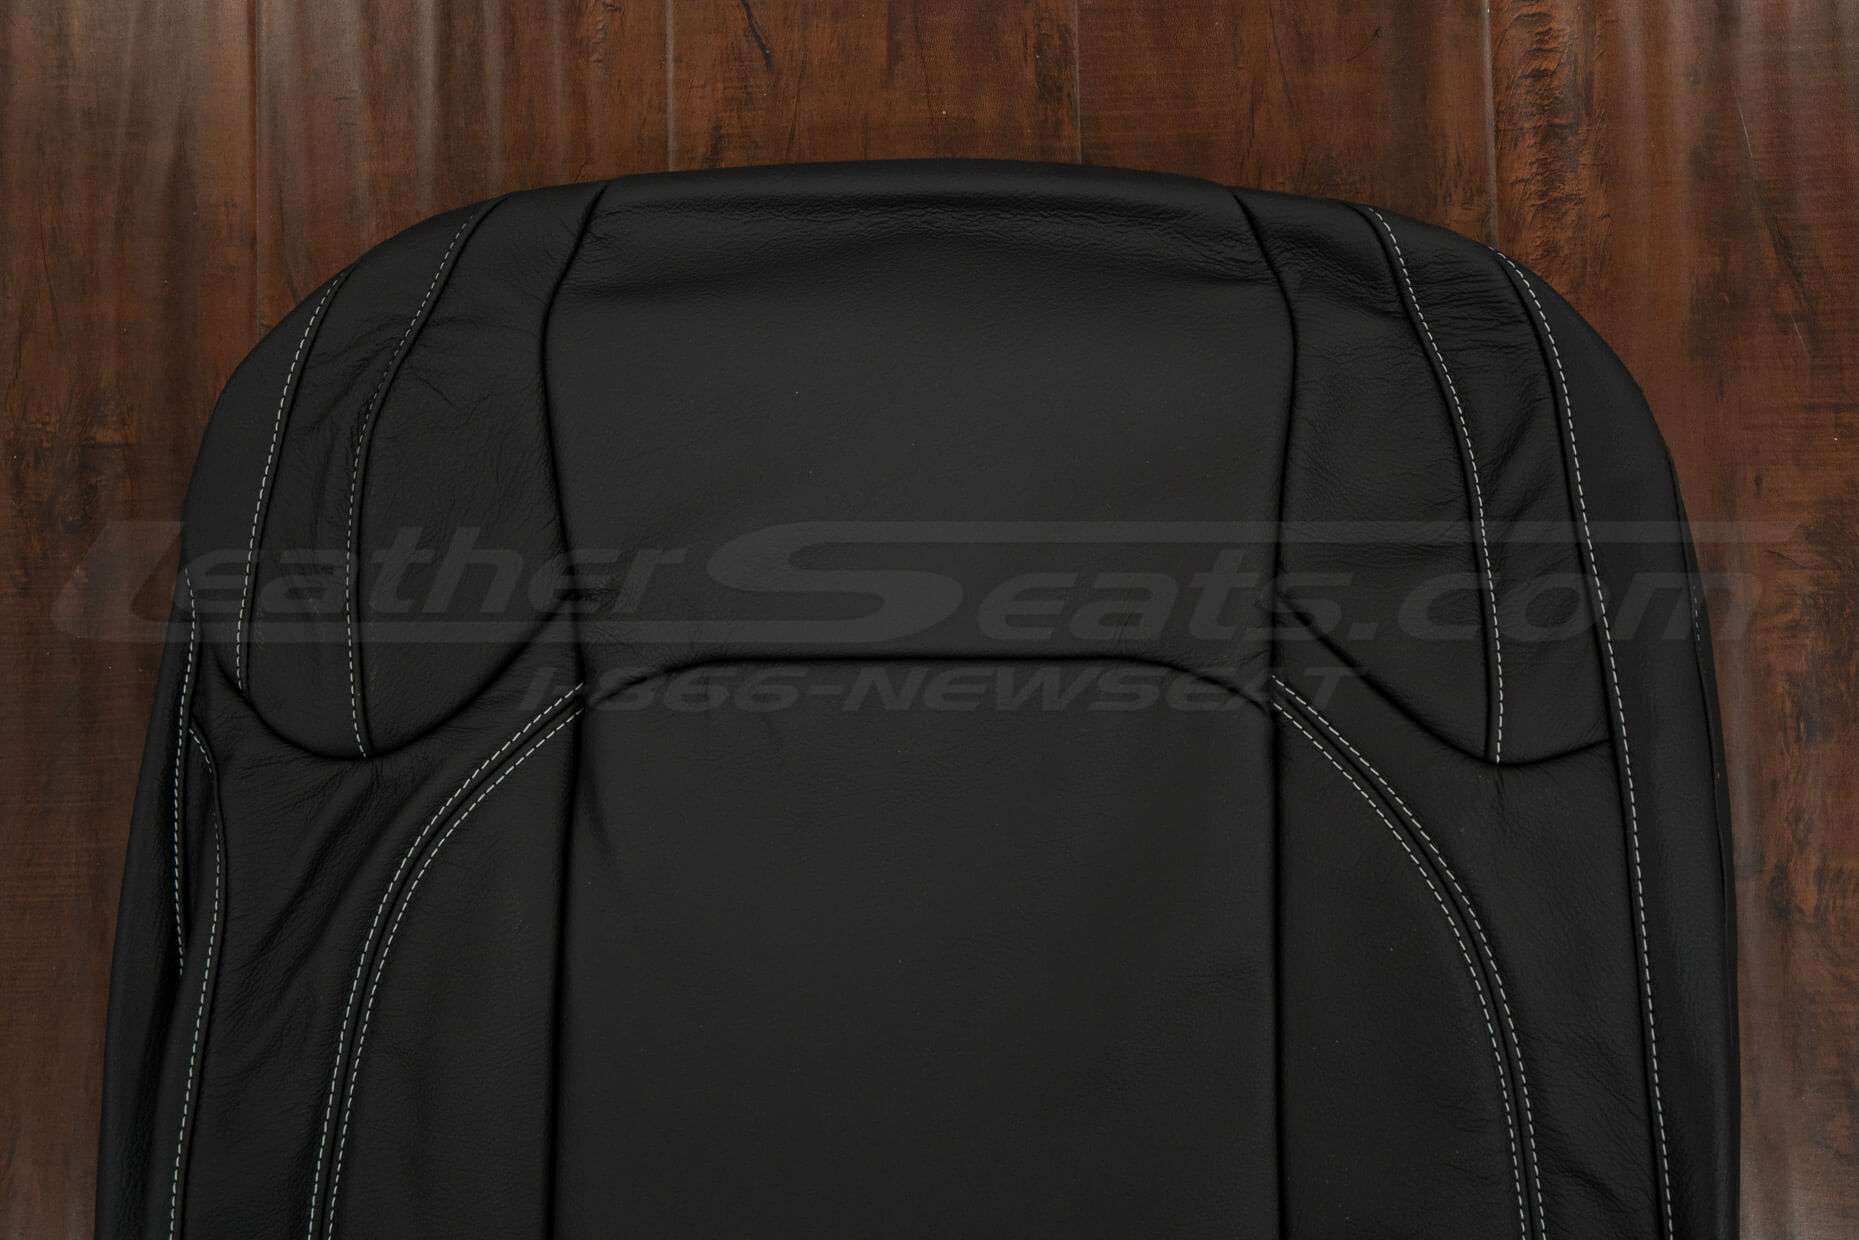 Upper section of Black backrest upholstery